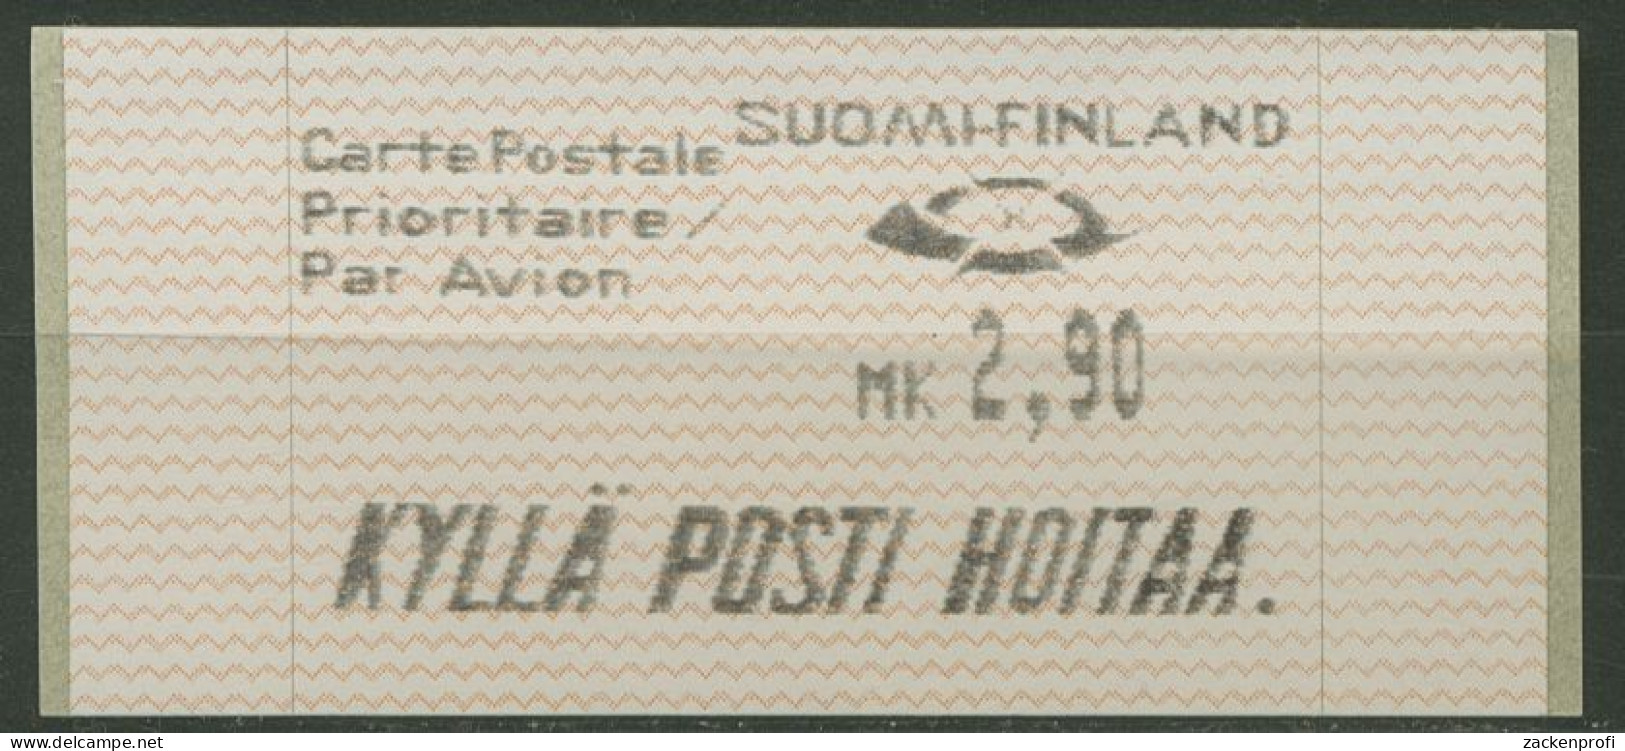 Finnland Automatenmarken 1991 MK 2,90 Einzelwert, ATM 10.1 Z3 Postfrisch - Machine Labels [ATM]